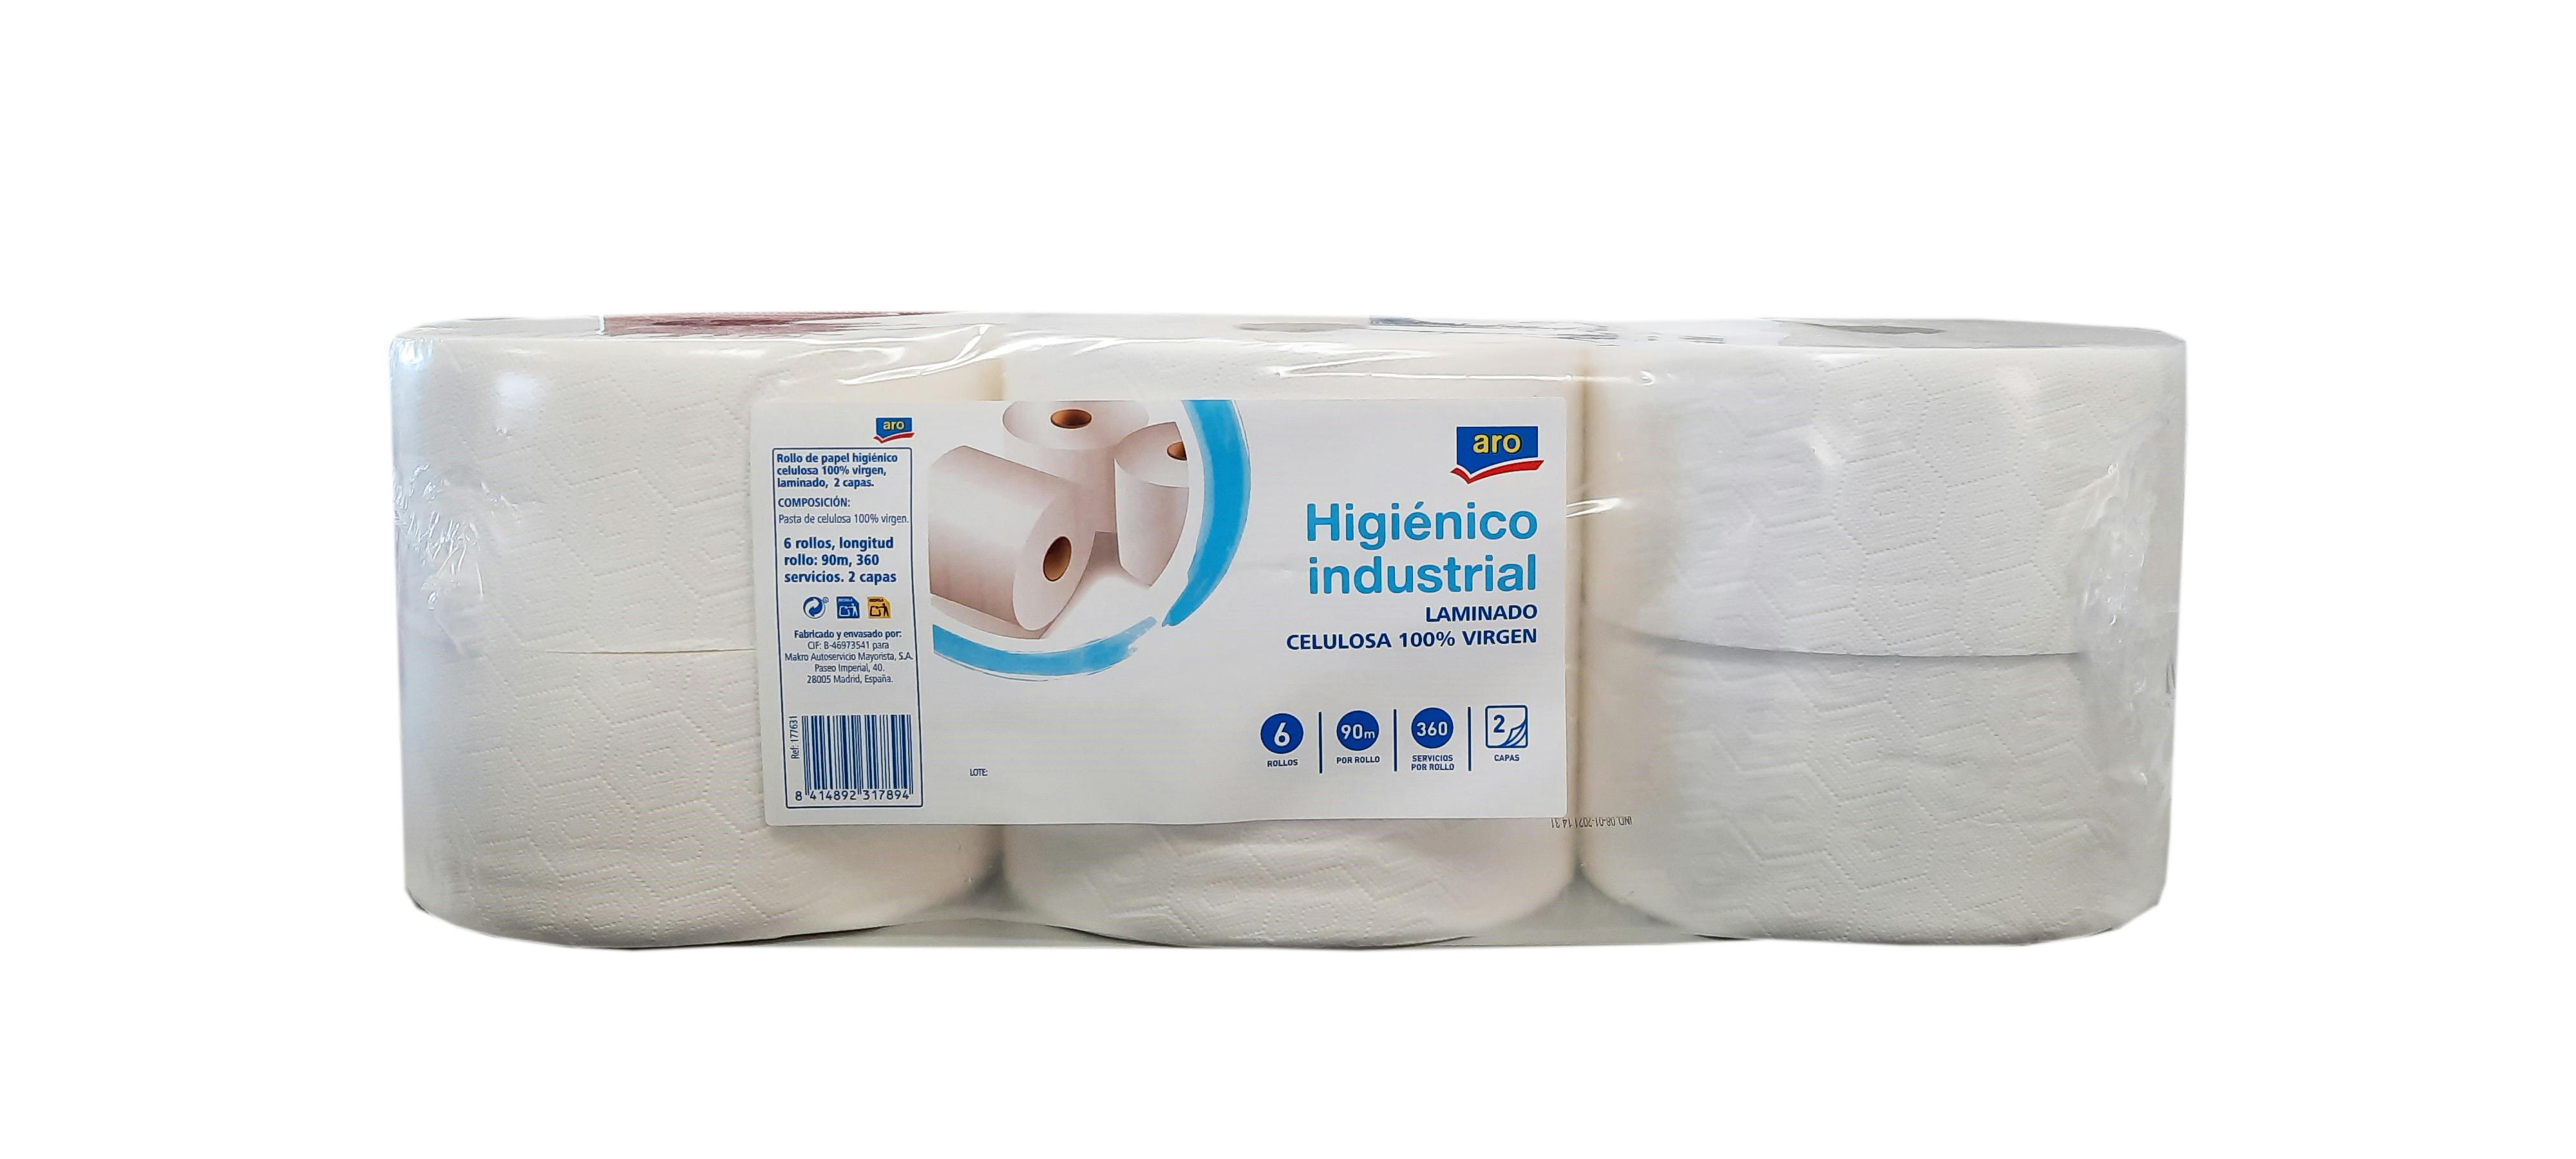 ROLLOS PAPEL HIGIÉNICO INDUSTRIAL JUMBO  100 metros/rollo, papel Higiénico  Profesional Fabricado en Celulosa Virgen 100%